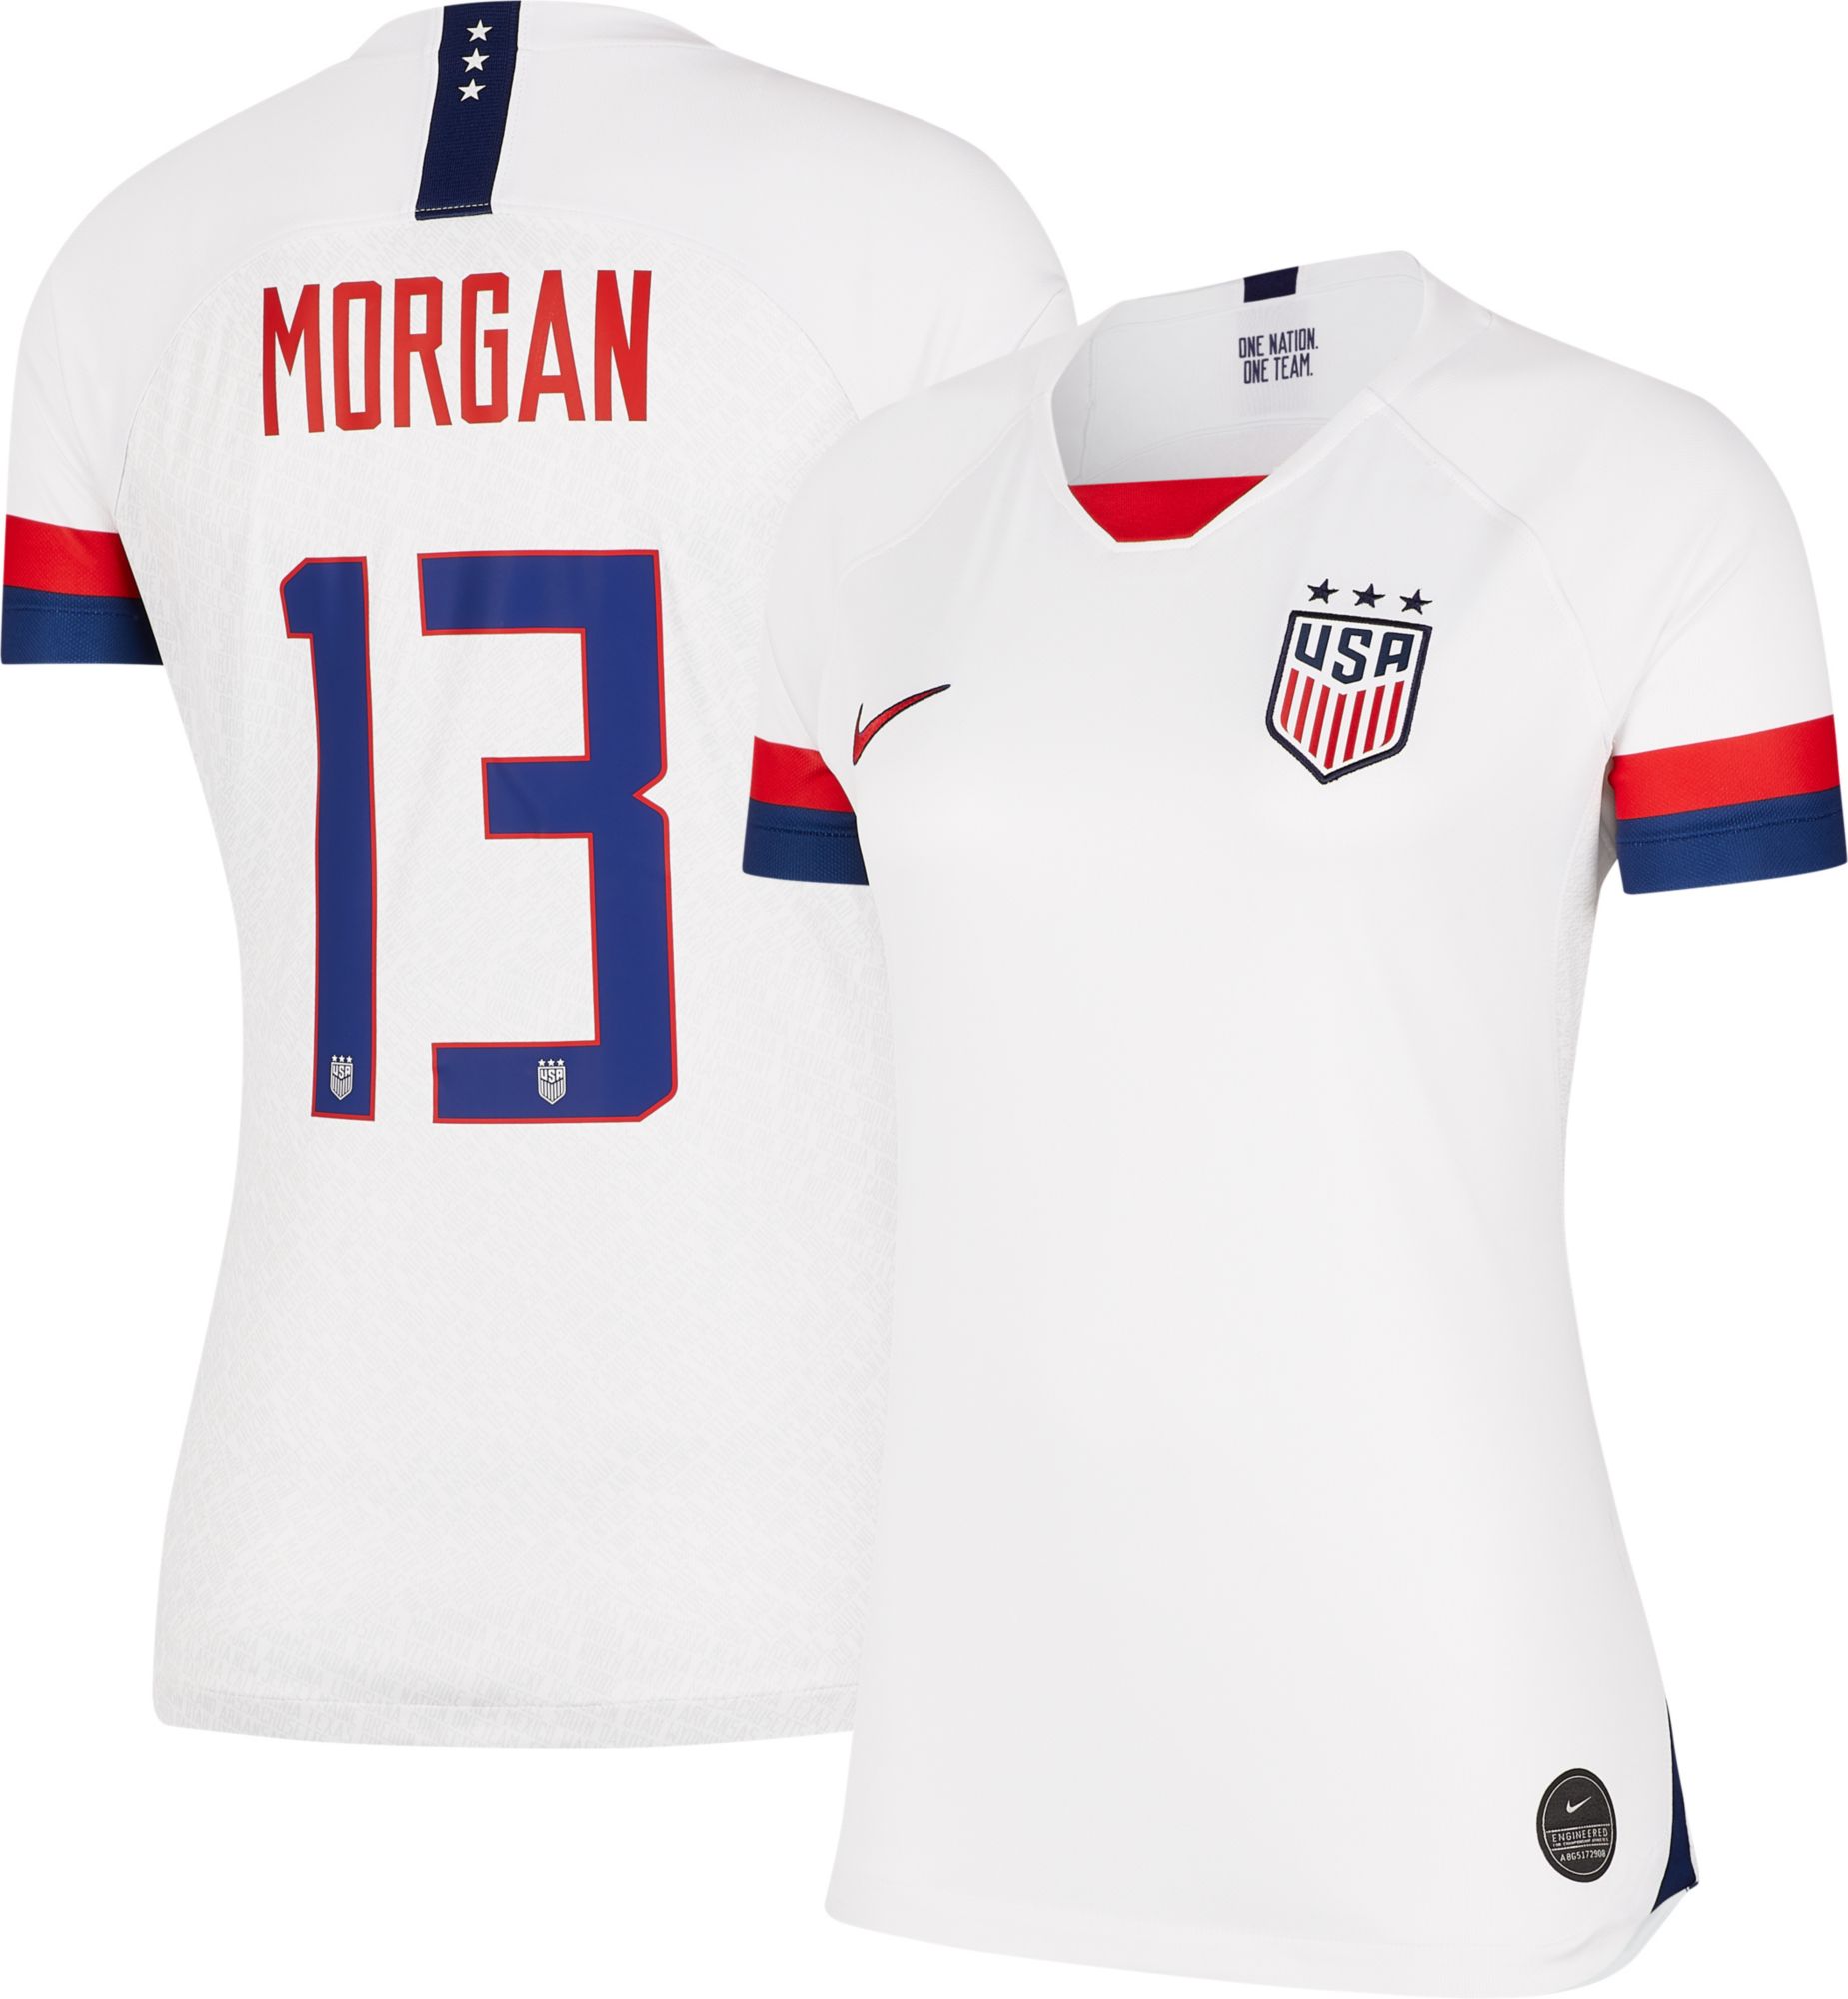 alex morgan women's soccer jersey